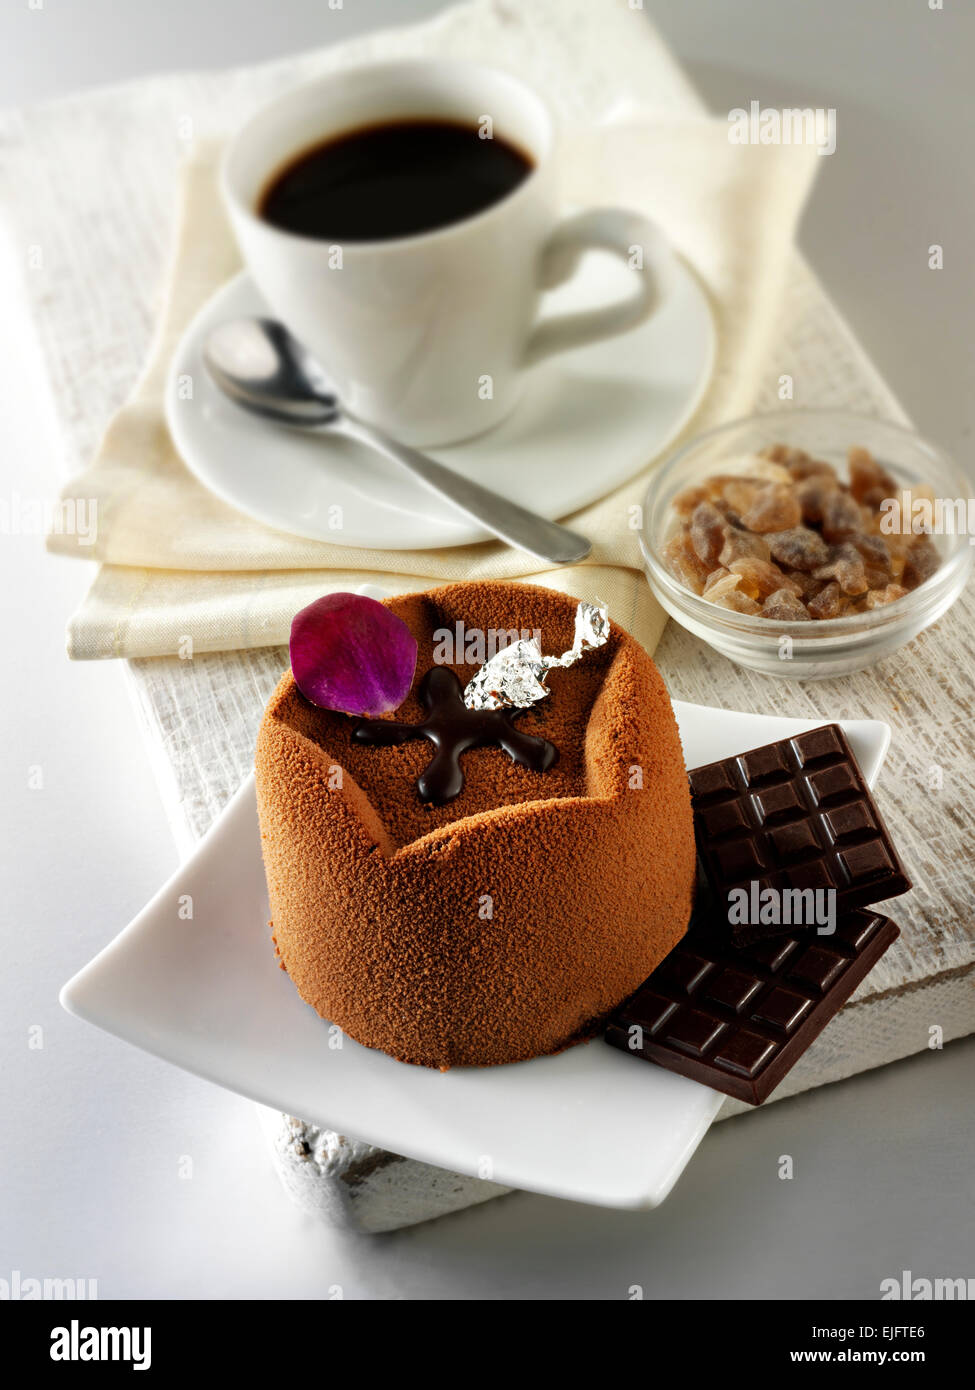 Schokoladenkuchen mit einem geformten Schokolade Gehäuse und ein Schoko-Füllung, überzogen mit Kakaopulver Stockfoto